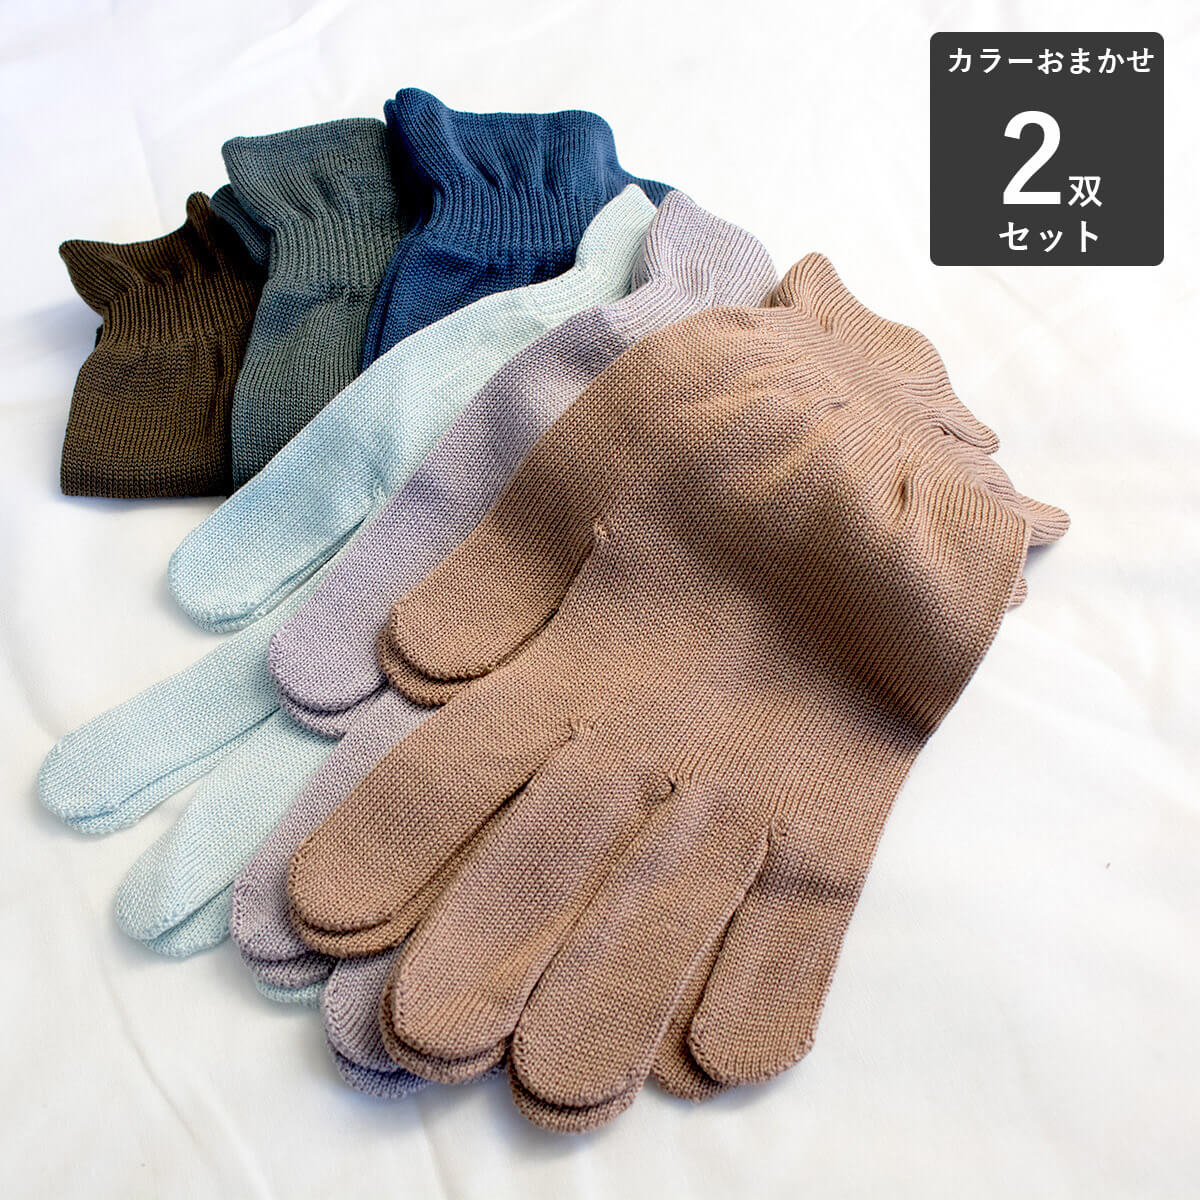 2双セット シルク 手袋 てぶくろ 手ぶくろ シルク100% 絹 レディース アウトレット 特価 送料無料 スタッフおまかせカラー natural シルク100％手袋 sunny 数量は多